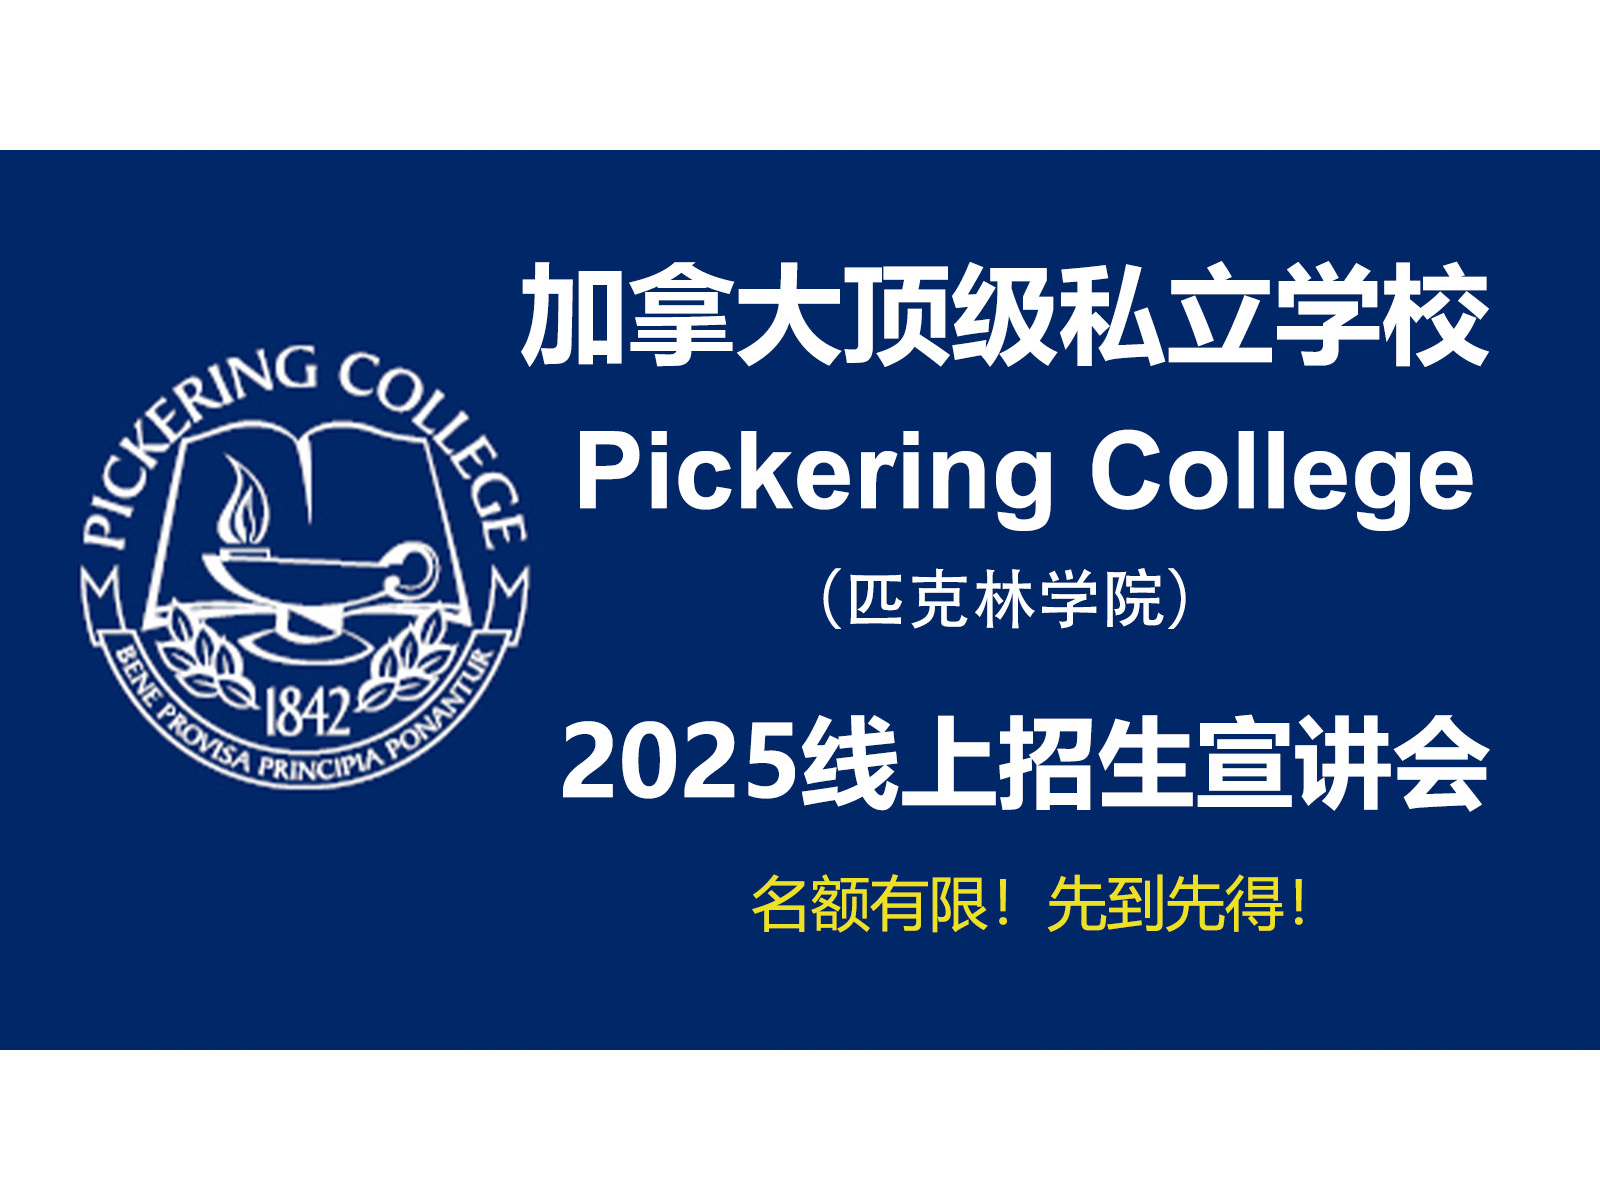 斯隆教育联合加拿大顶级私校Pickering College举办 2025年线上招生宣讲会